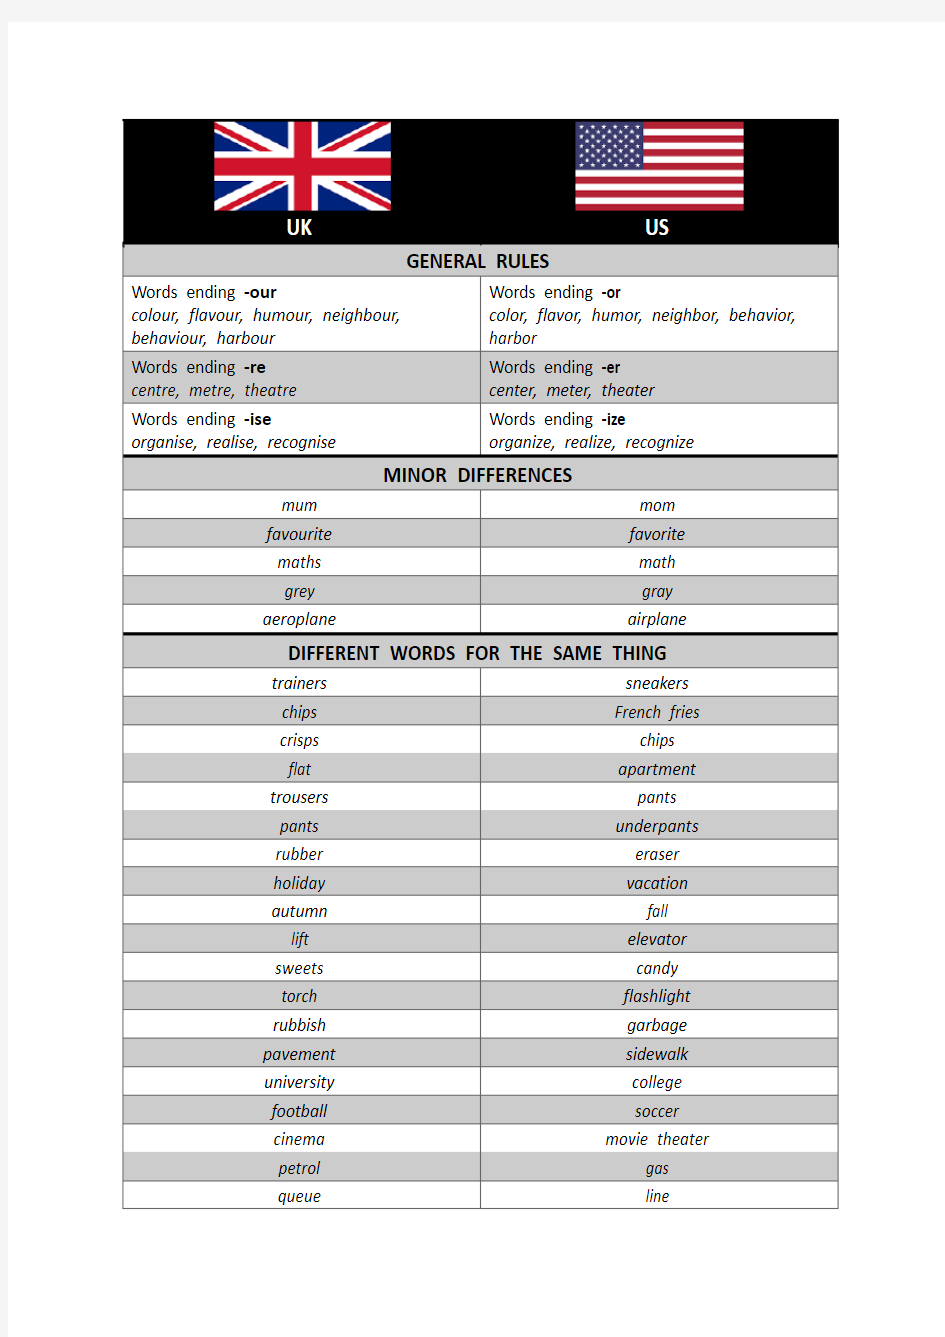 英式英语与美式英语在拼写和用法上的一些区别